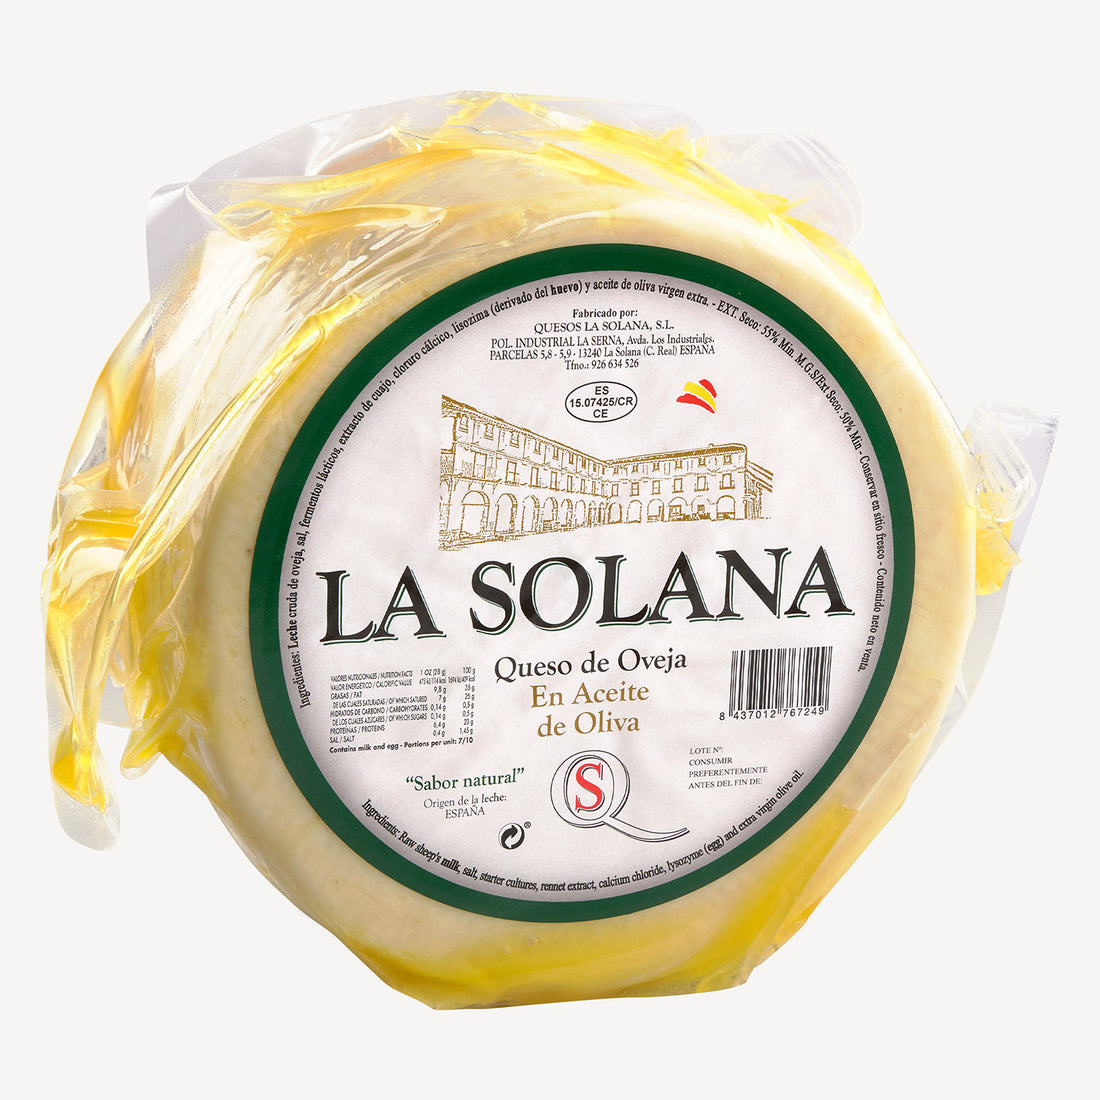 El queso madurado en aceite en su totalidad, una muestra de la elegancia y la riqueza que define a cada pieza de La Solana.